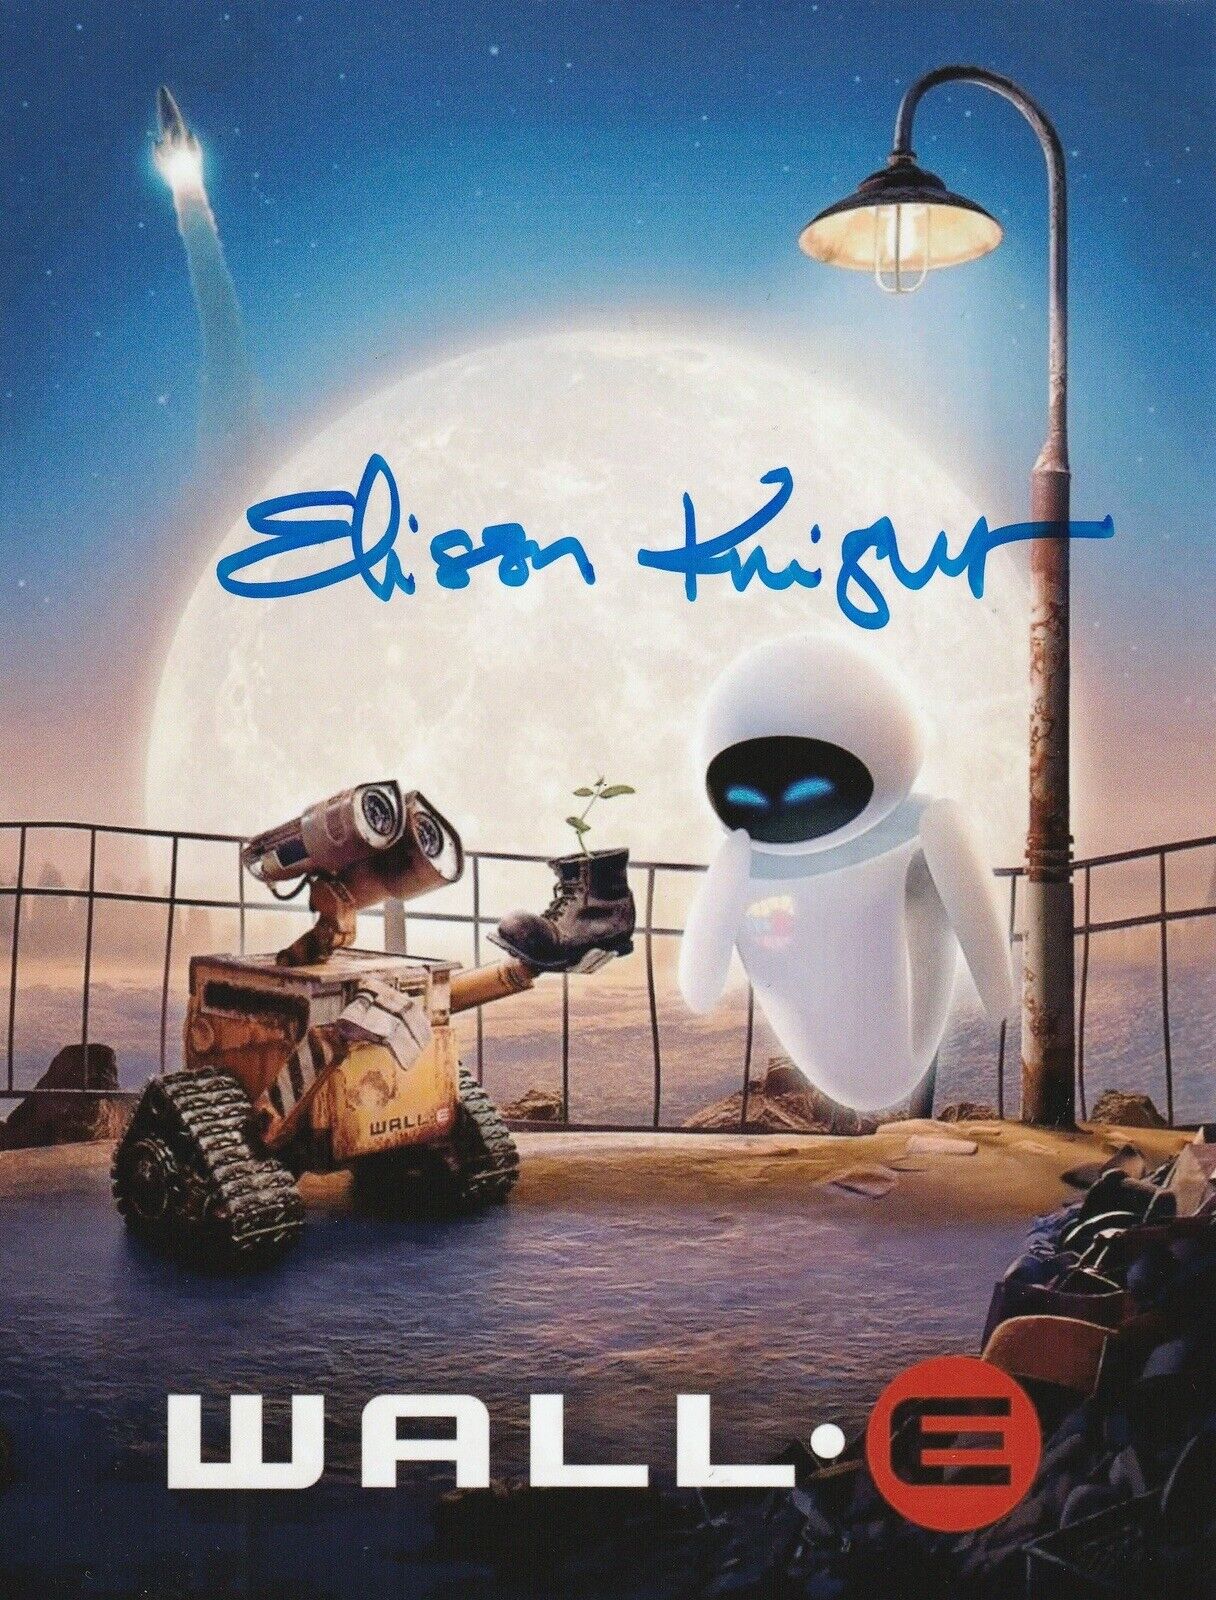 Elissa Knight Hand Signed 8x6 Inch WALL-E Photo Disney Pixar WALL E